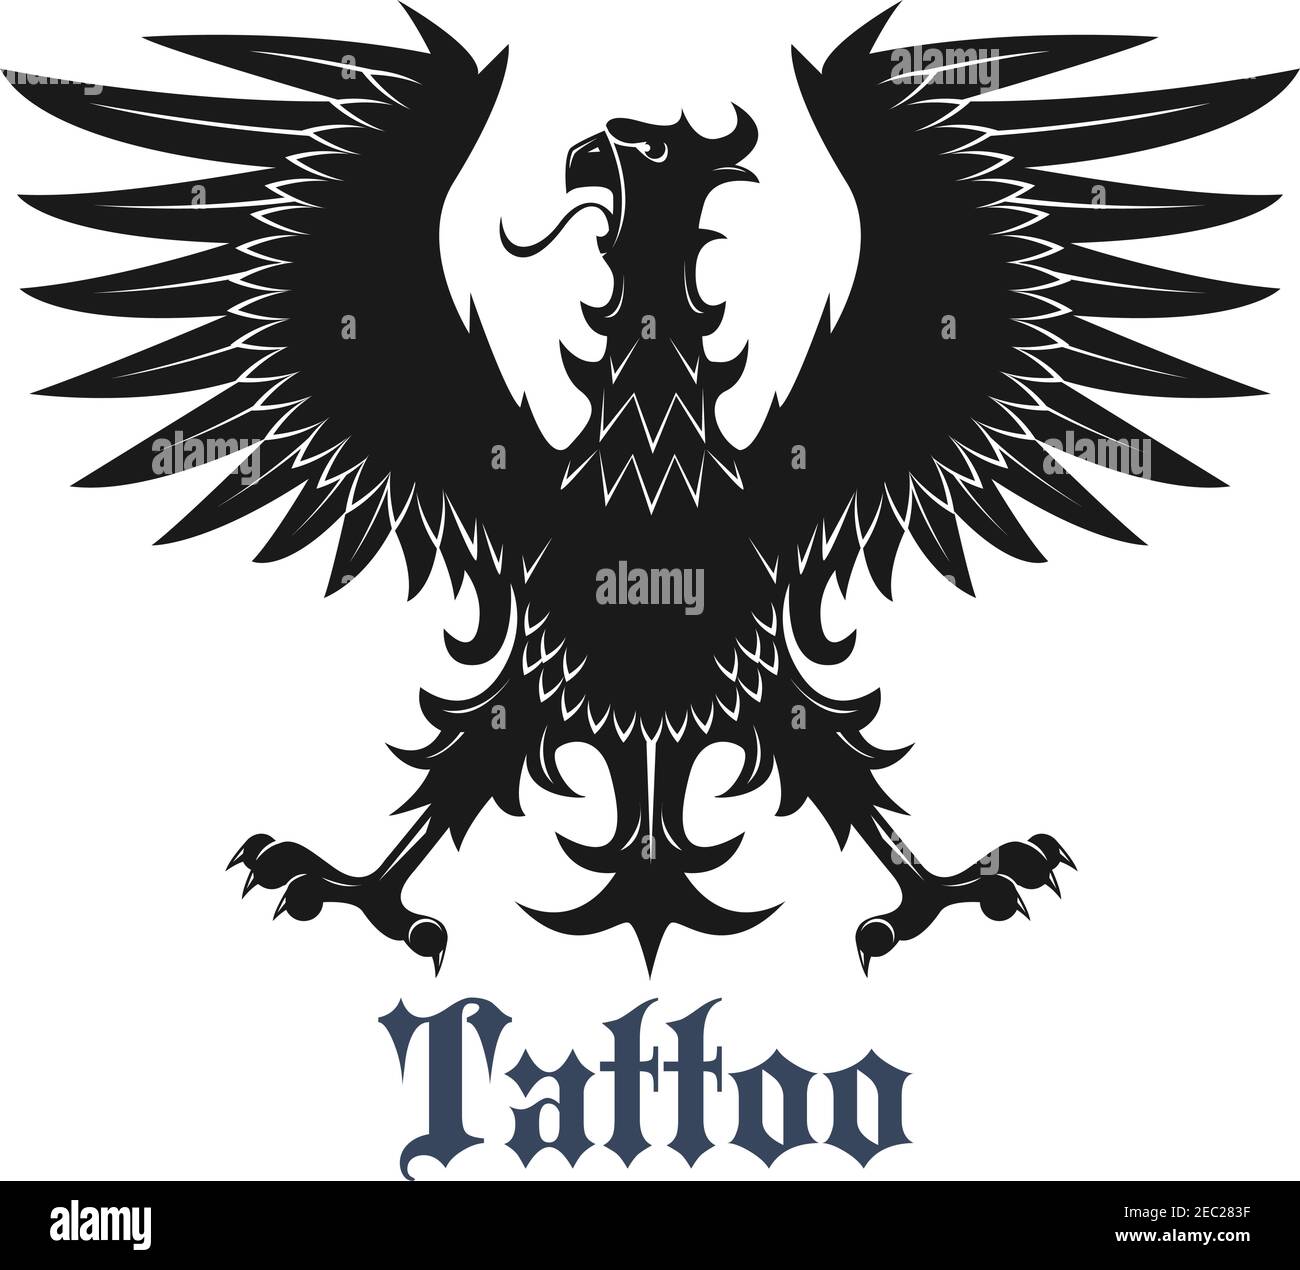 Wappentier Symbol für Tattoo oder Wappen Design Verwendung mit schwarzem Vogel in klassischer Position mit ausgestreckten Flügeln und Beinen, geschmückt durch geschwungene Stock Vektor